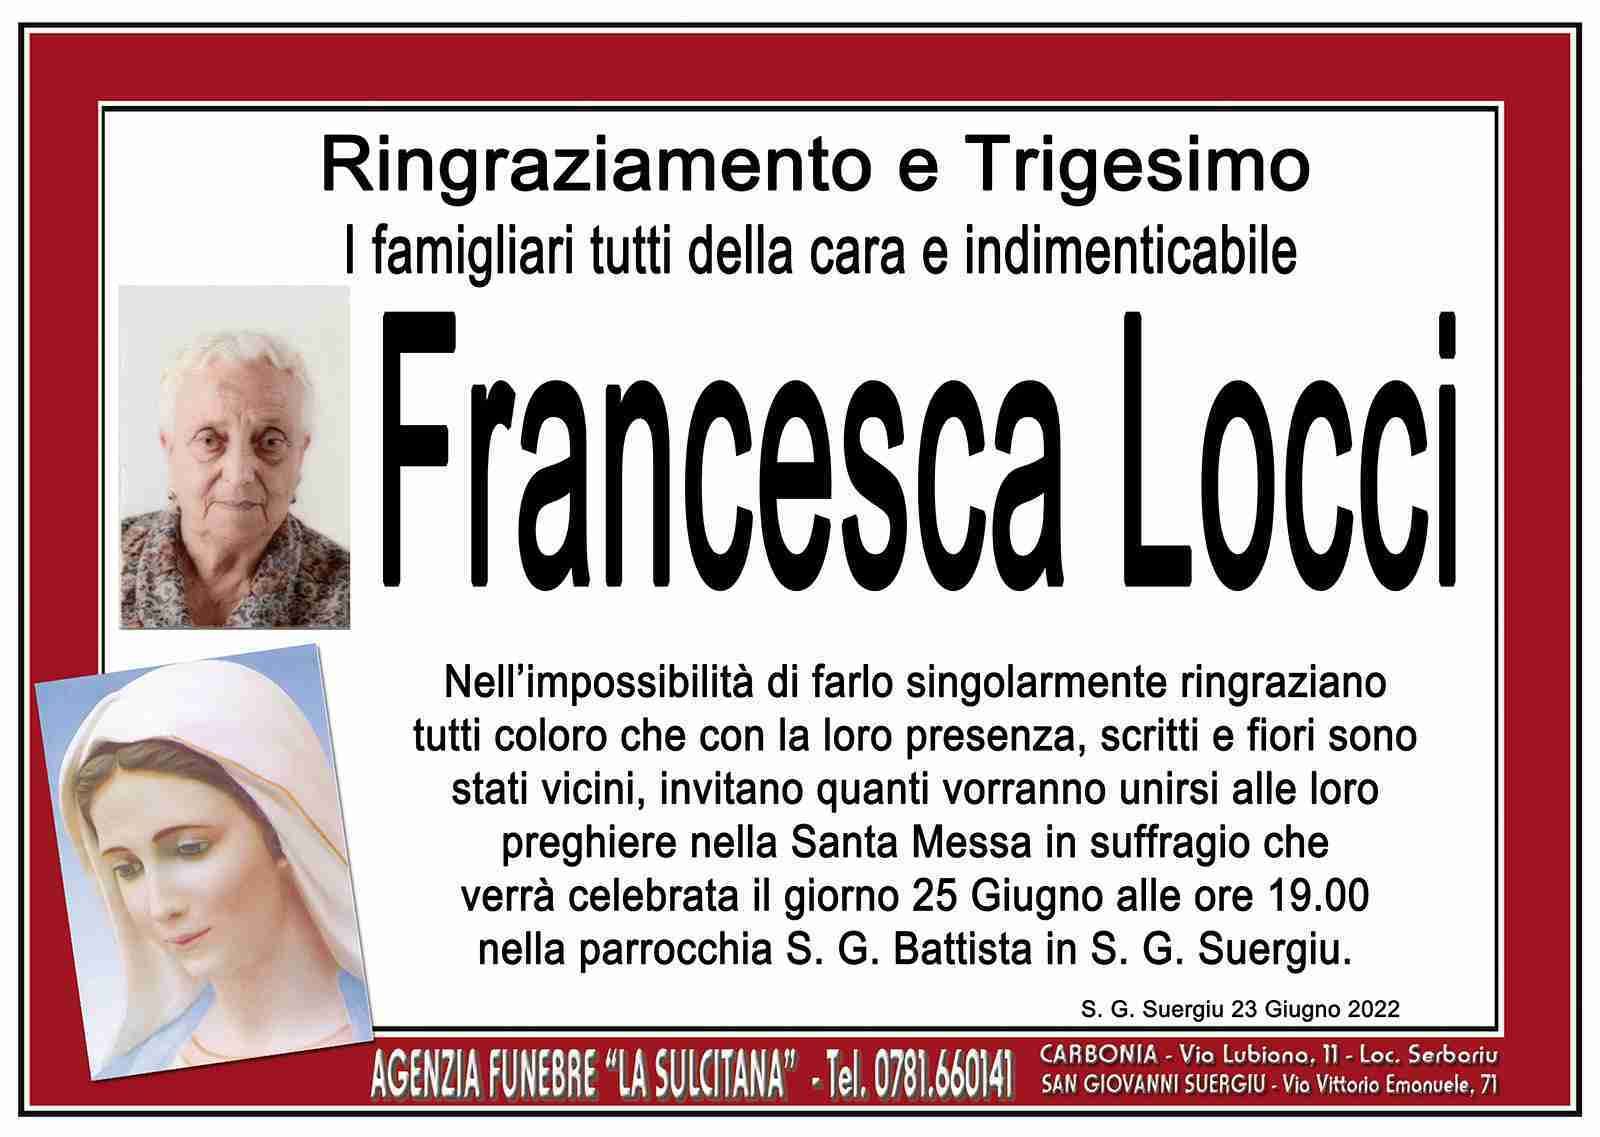 Francesca Locci